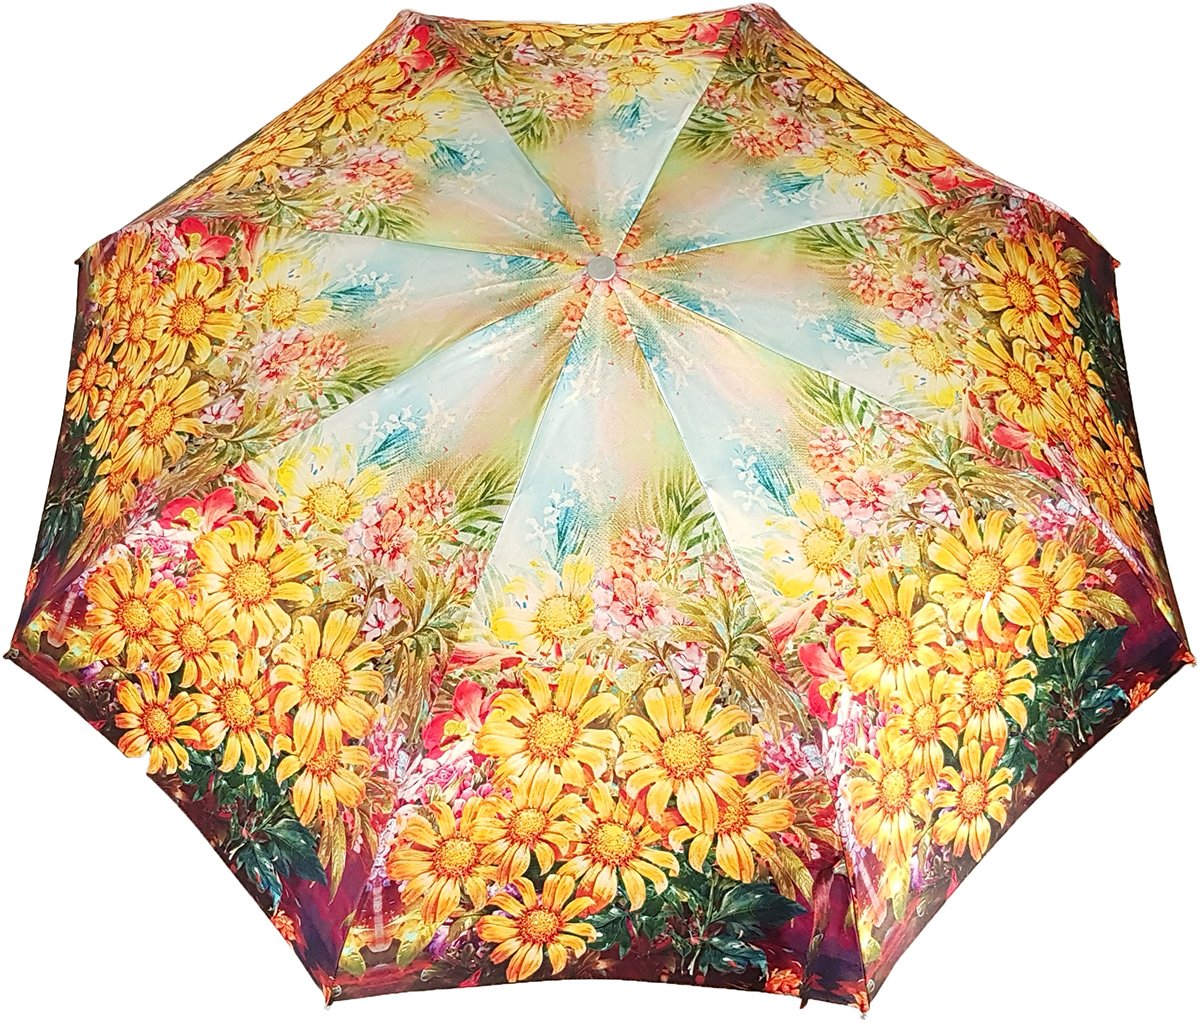 Folding Umbrella For Women With Bright Flowers - il-marchesato